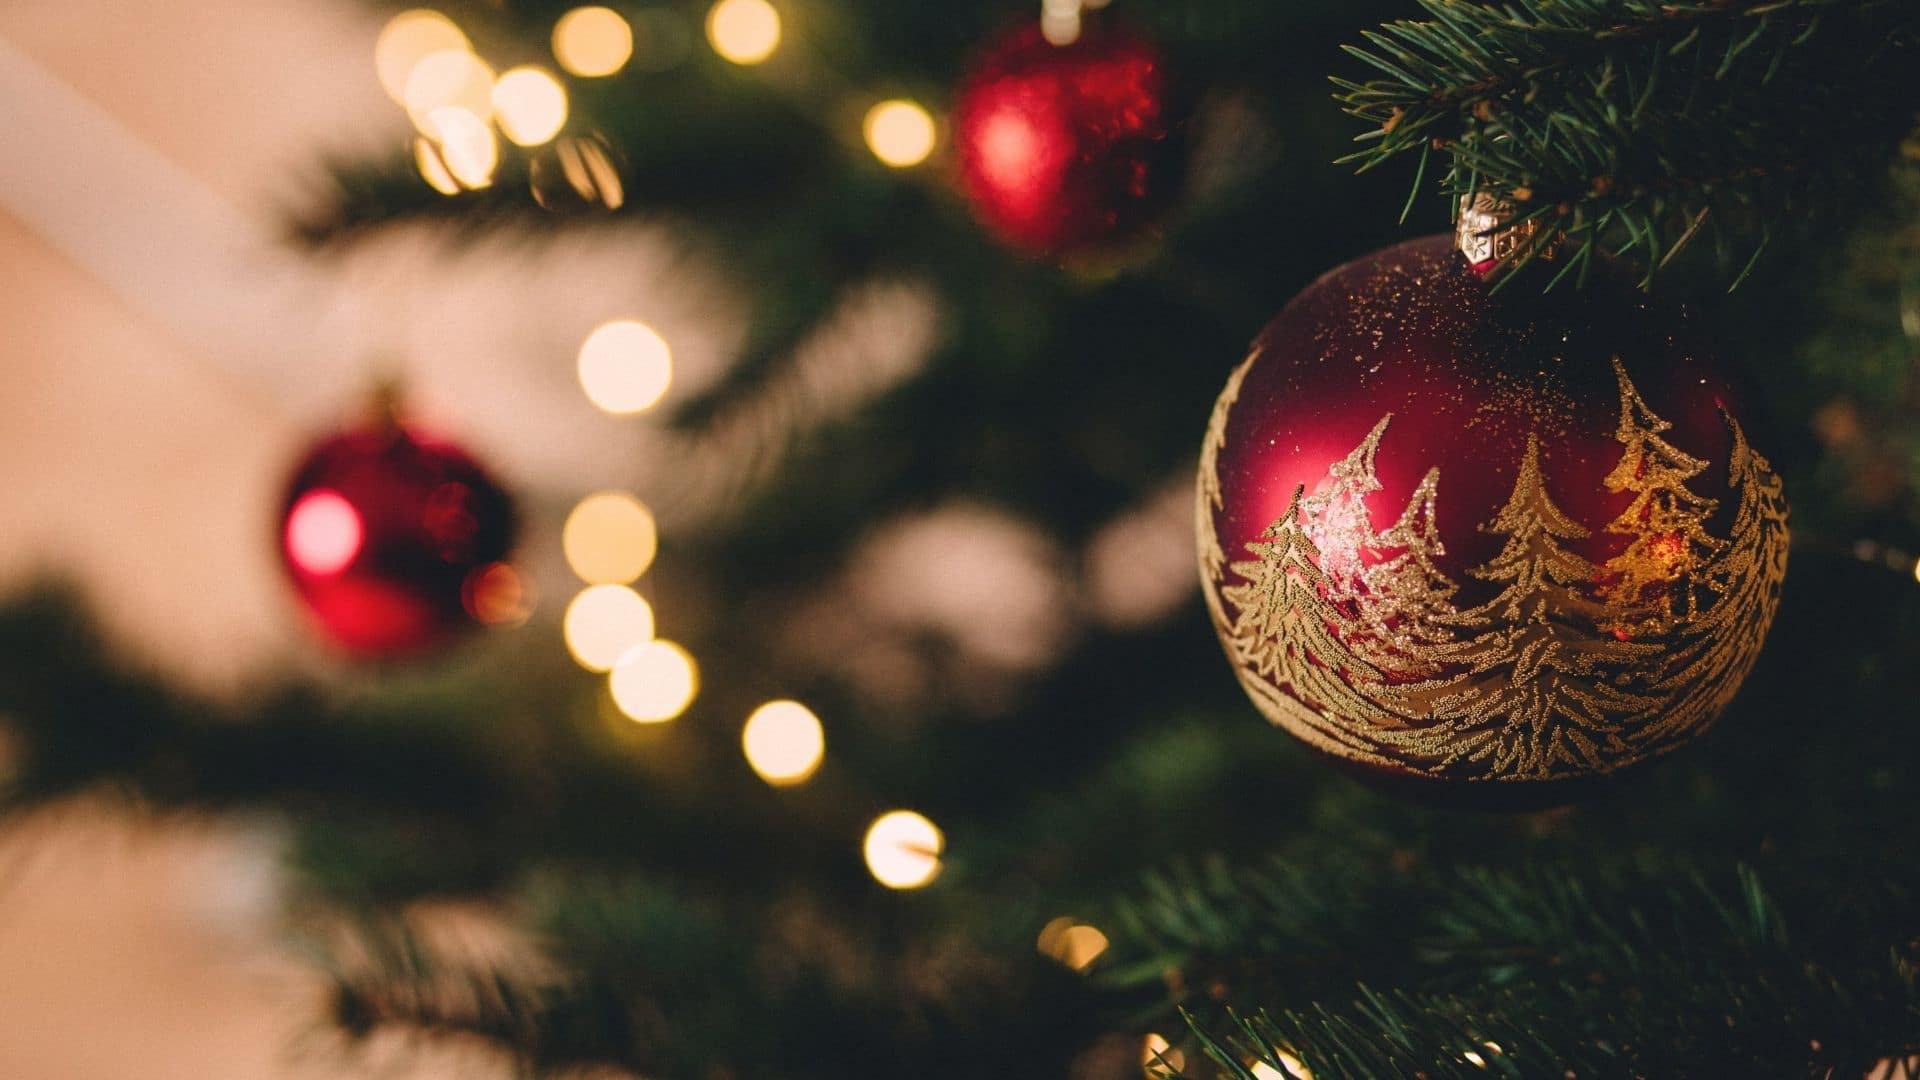 Los datos curiosos sobre la Navidad puede llegar a sorprender a muchos. Desde el villancico más conocido hasta cambios en las tradiciones